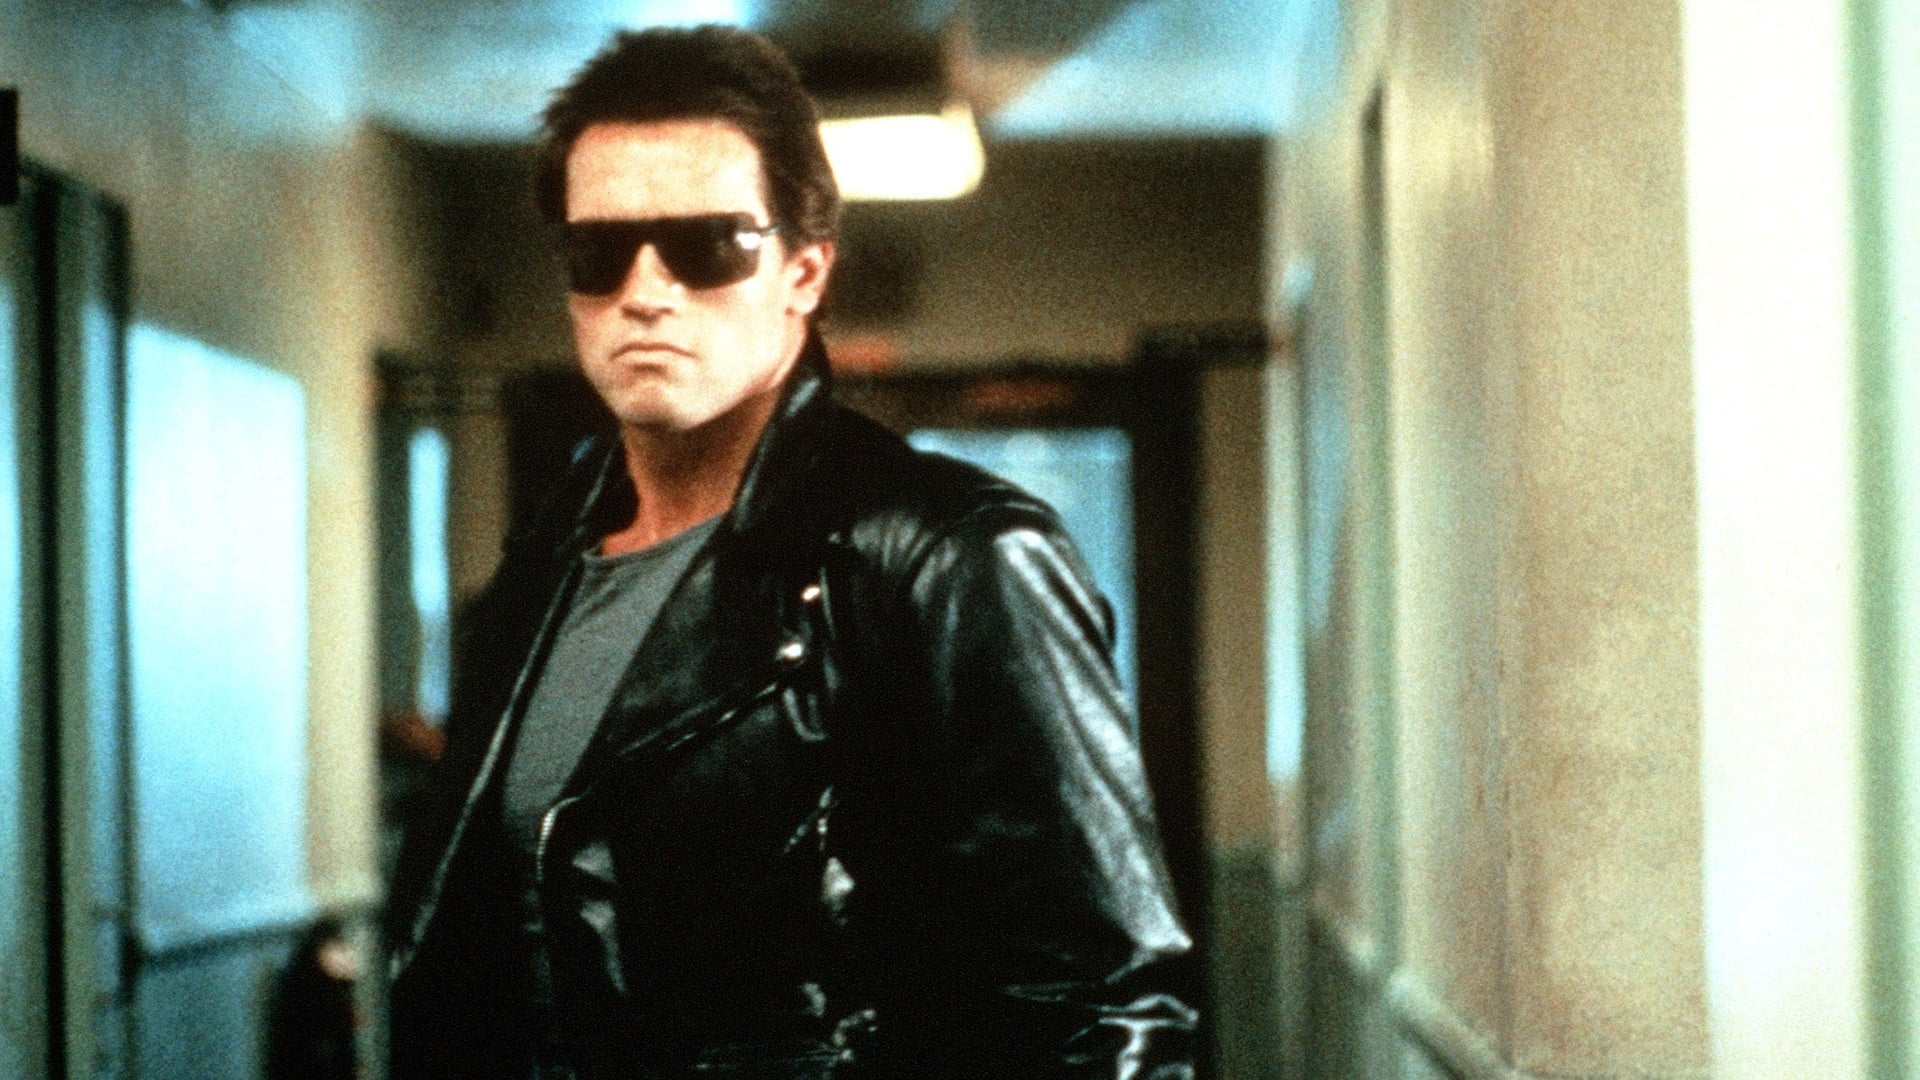 Arnold Schwarzenegger as The Terminator (1984) poster